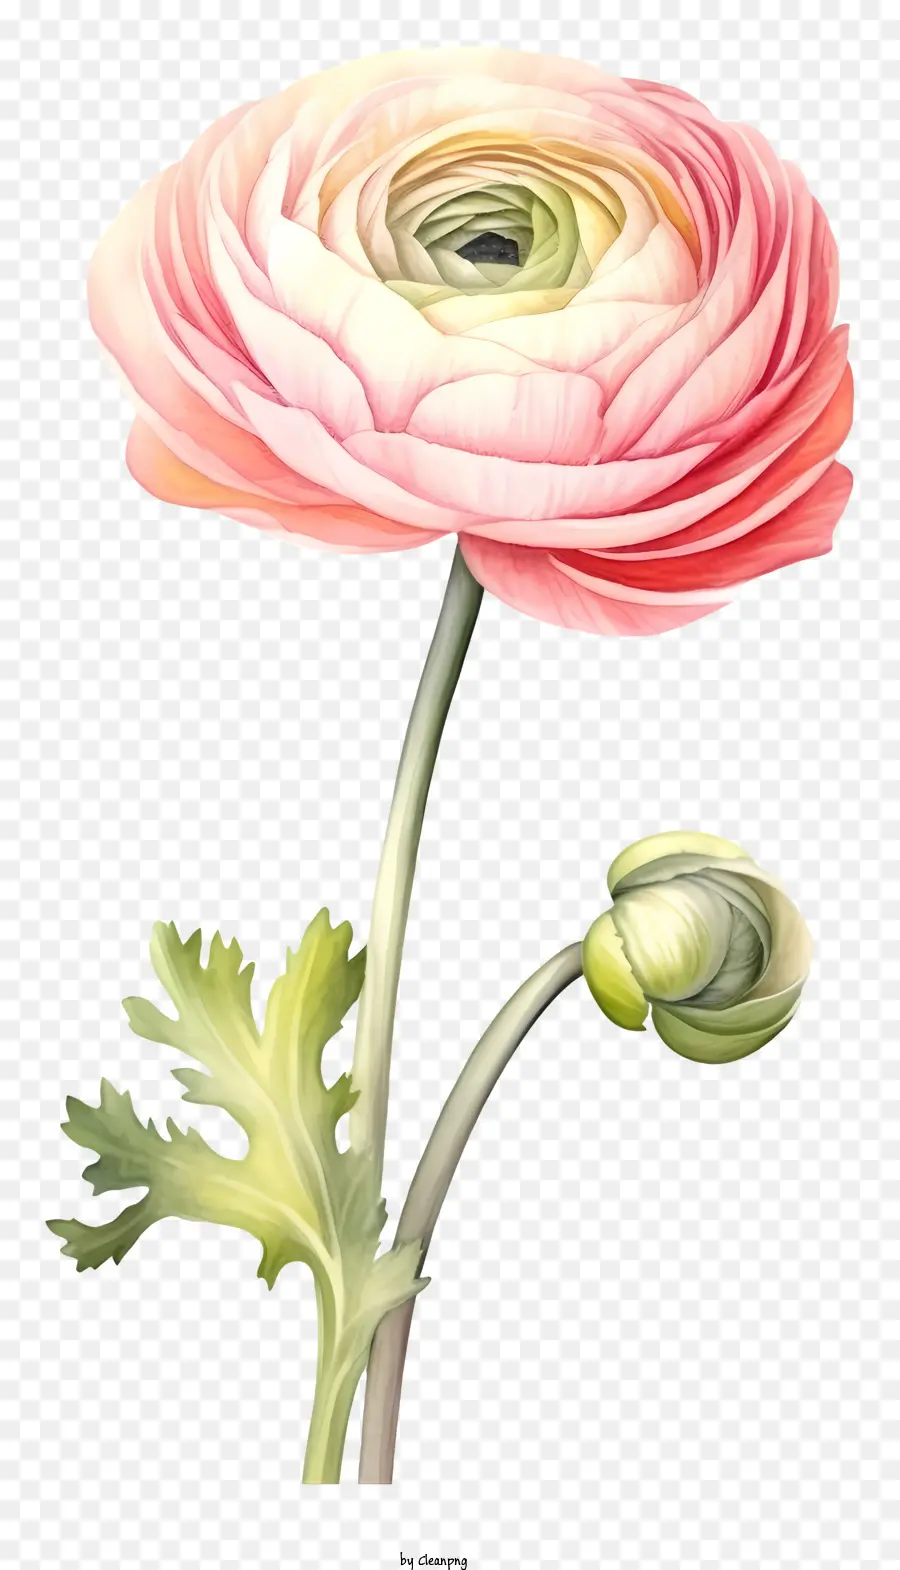 stame di fiori di anemone rosa e petali arricciati di pistillo fiorino la pianta verde a foglia verde - Immagine del fiore di anemone rosa; 
manca di dettagli e sfondo